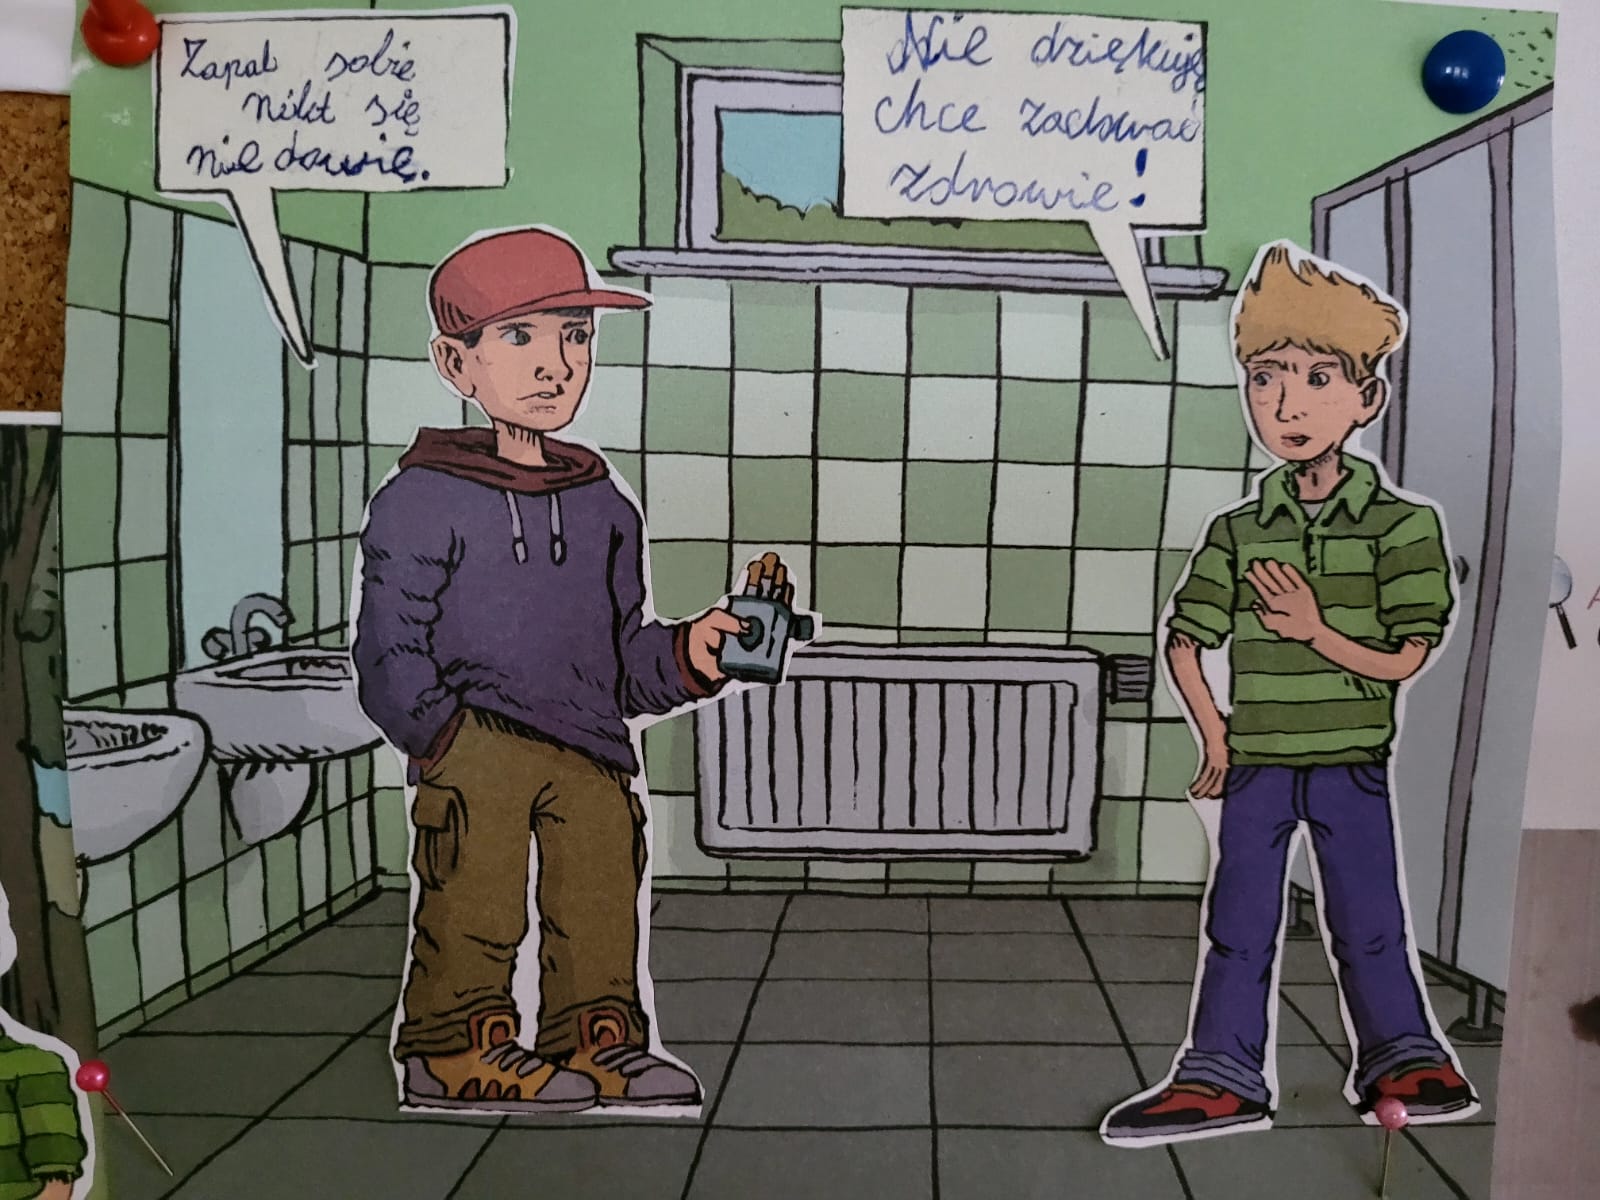 Zdjęcie grafiki wykonnej w stylu komiksu. W toalecie stoi dwóch chłopców. Jedn z nich mówi "Zapal sobie nikt się nie dowie." na co drugi odpowiada "Nie dziękuję chce zachować zdrowie !".